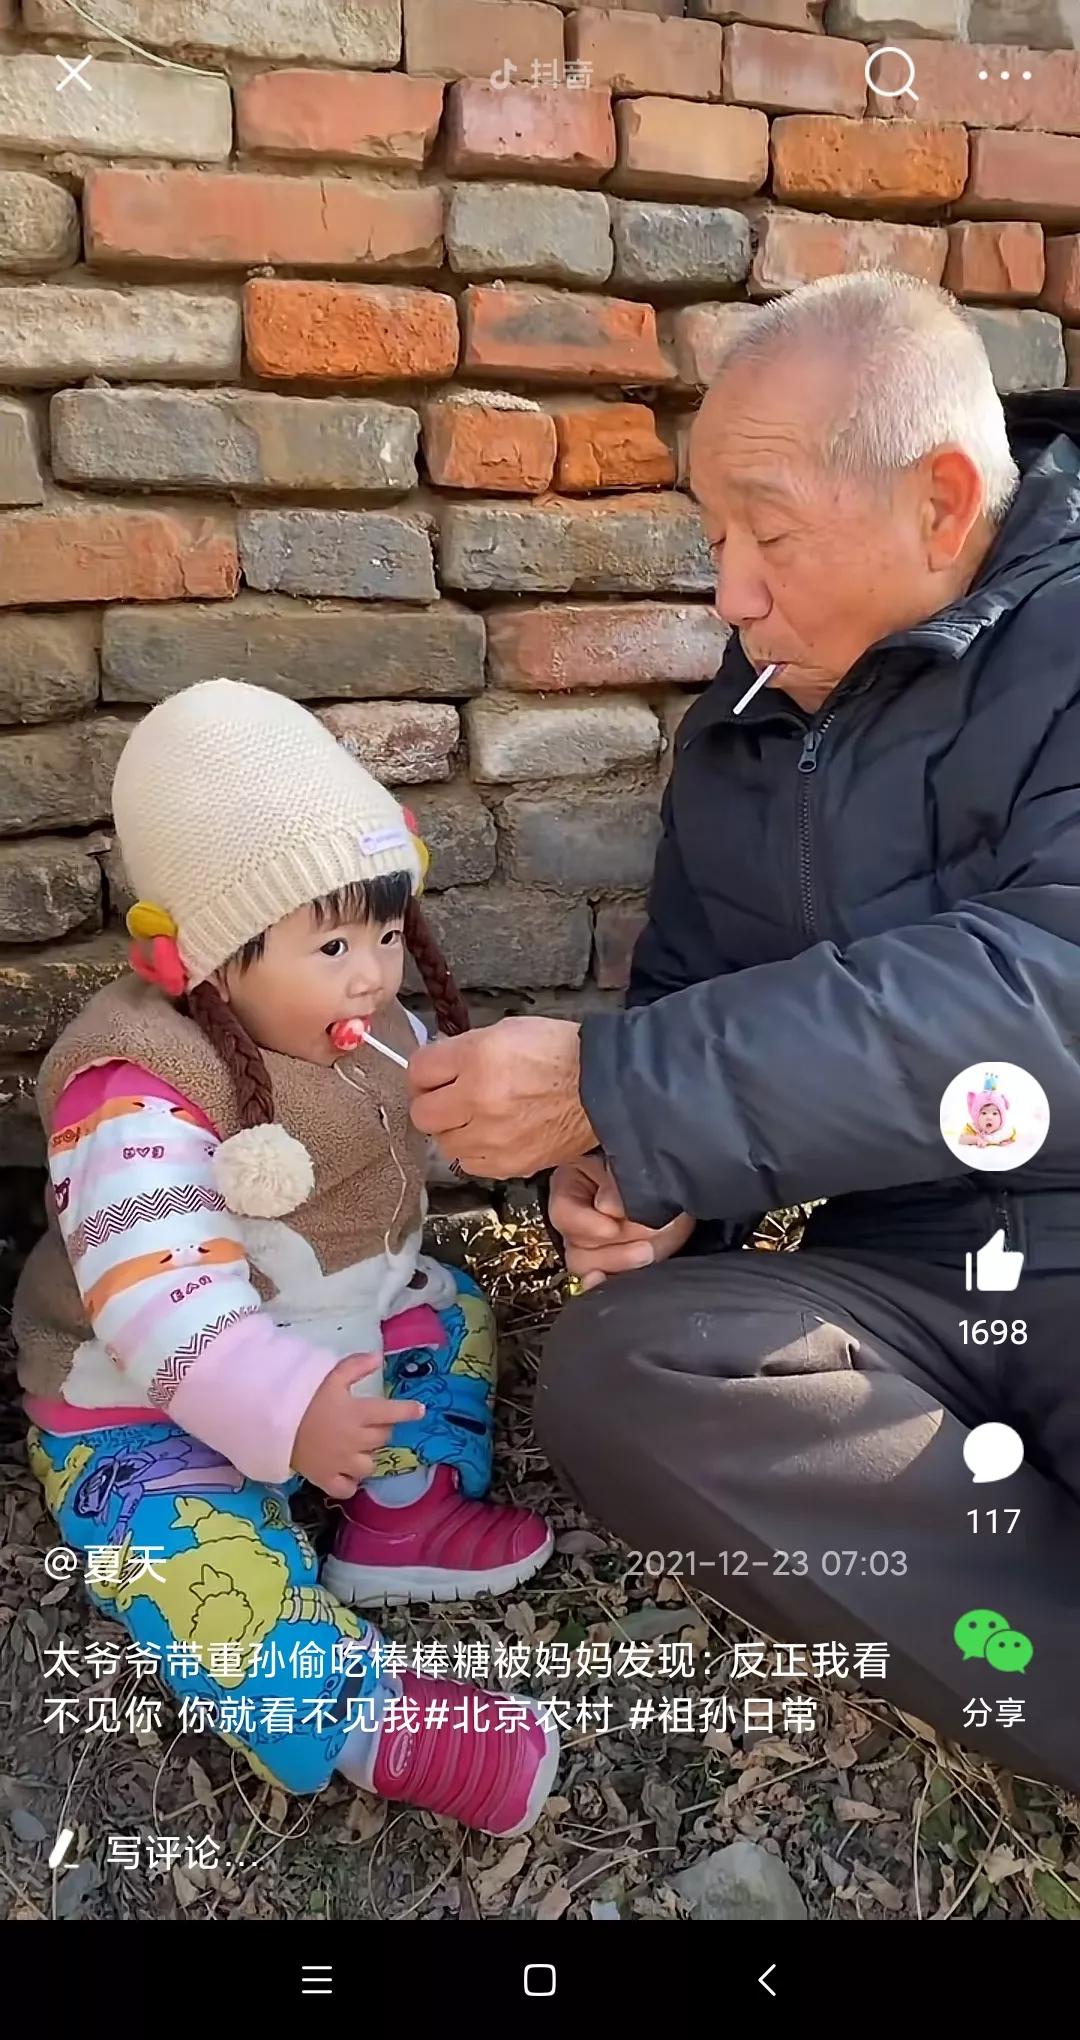 太爷爷带重孙偷吃棒棒糖……健康与情感，温馨与健康如何选择？